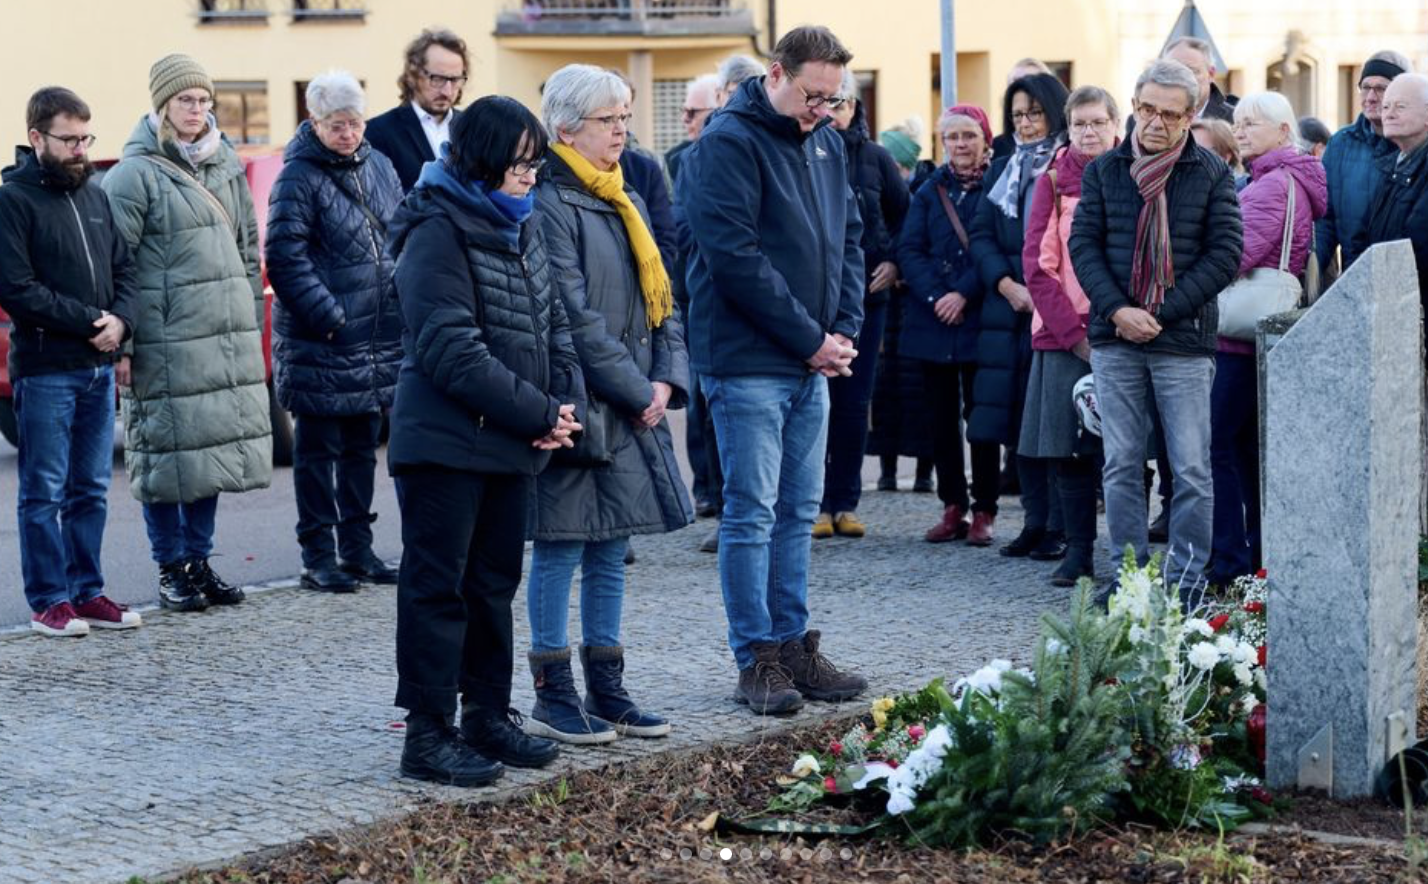 Personen stehen zum Gedenken an der Stele für Sinti & Roma in Merseburg - am 27. Januar 2024

Bildrechte bei Kerstin Eisenreich